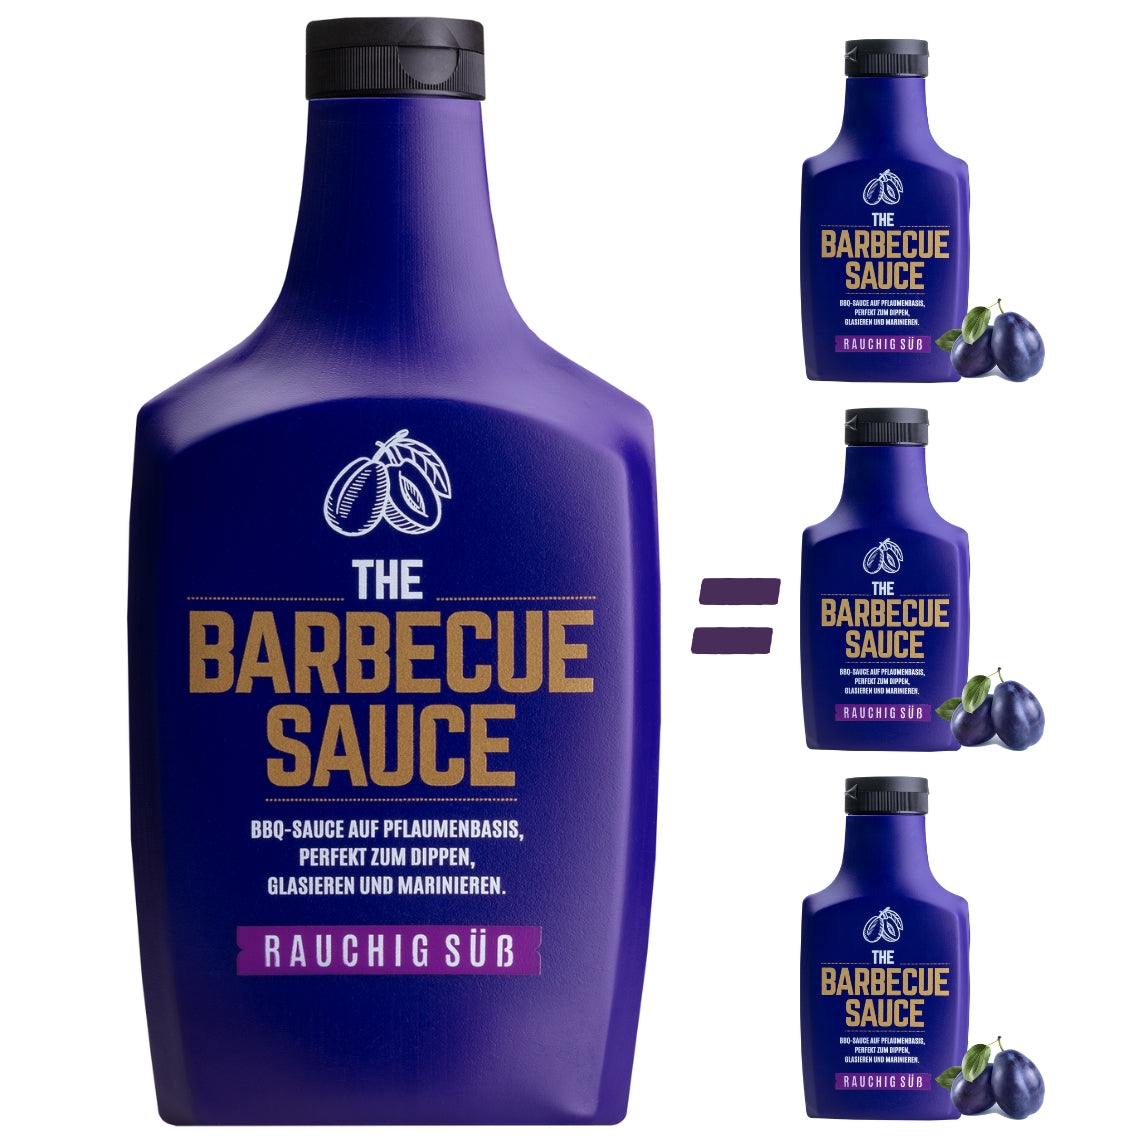 Der BigBoy 1100g BBQ Sauce auf Pflaumenbasisist unsere Jumboflasche für echte Griller aber auch für Sparfüchse, die Wert auf Umweltschutz legen.